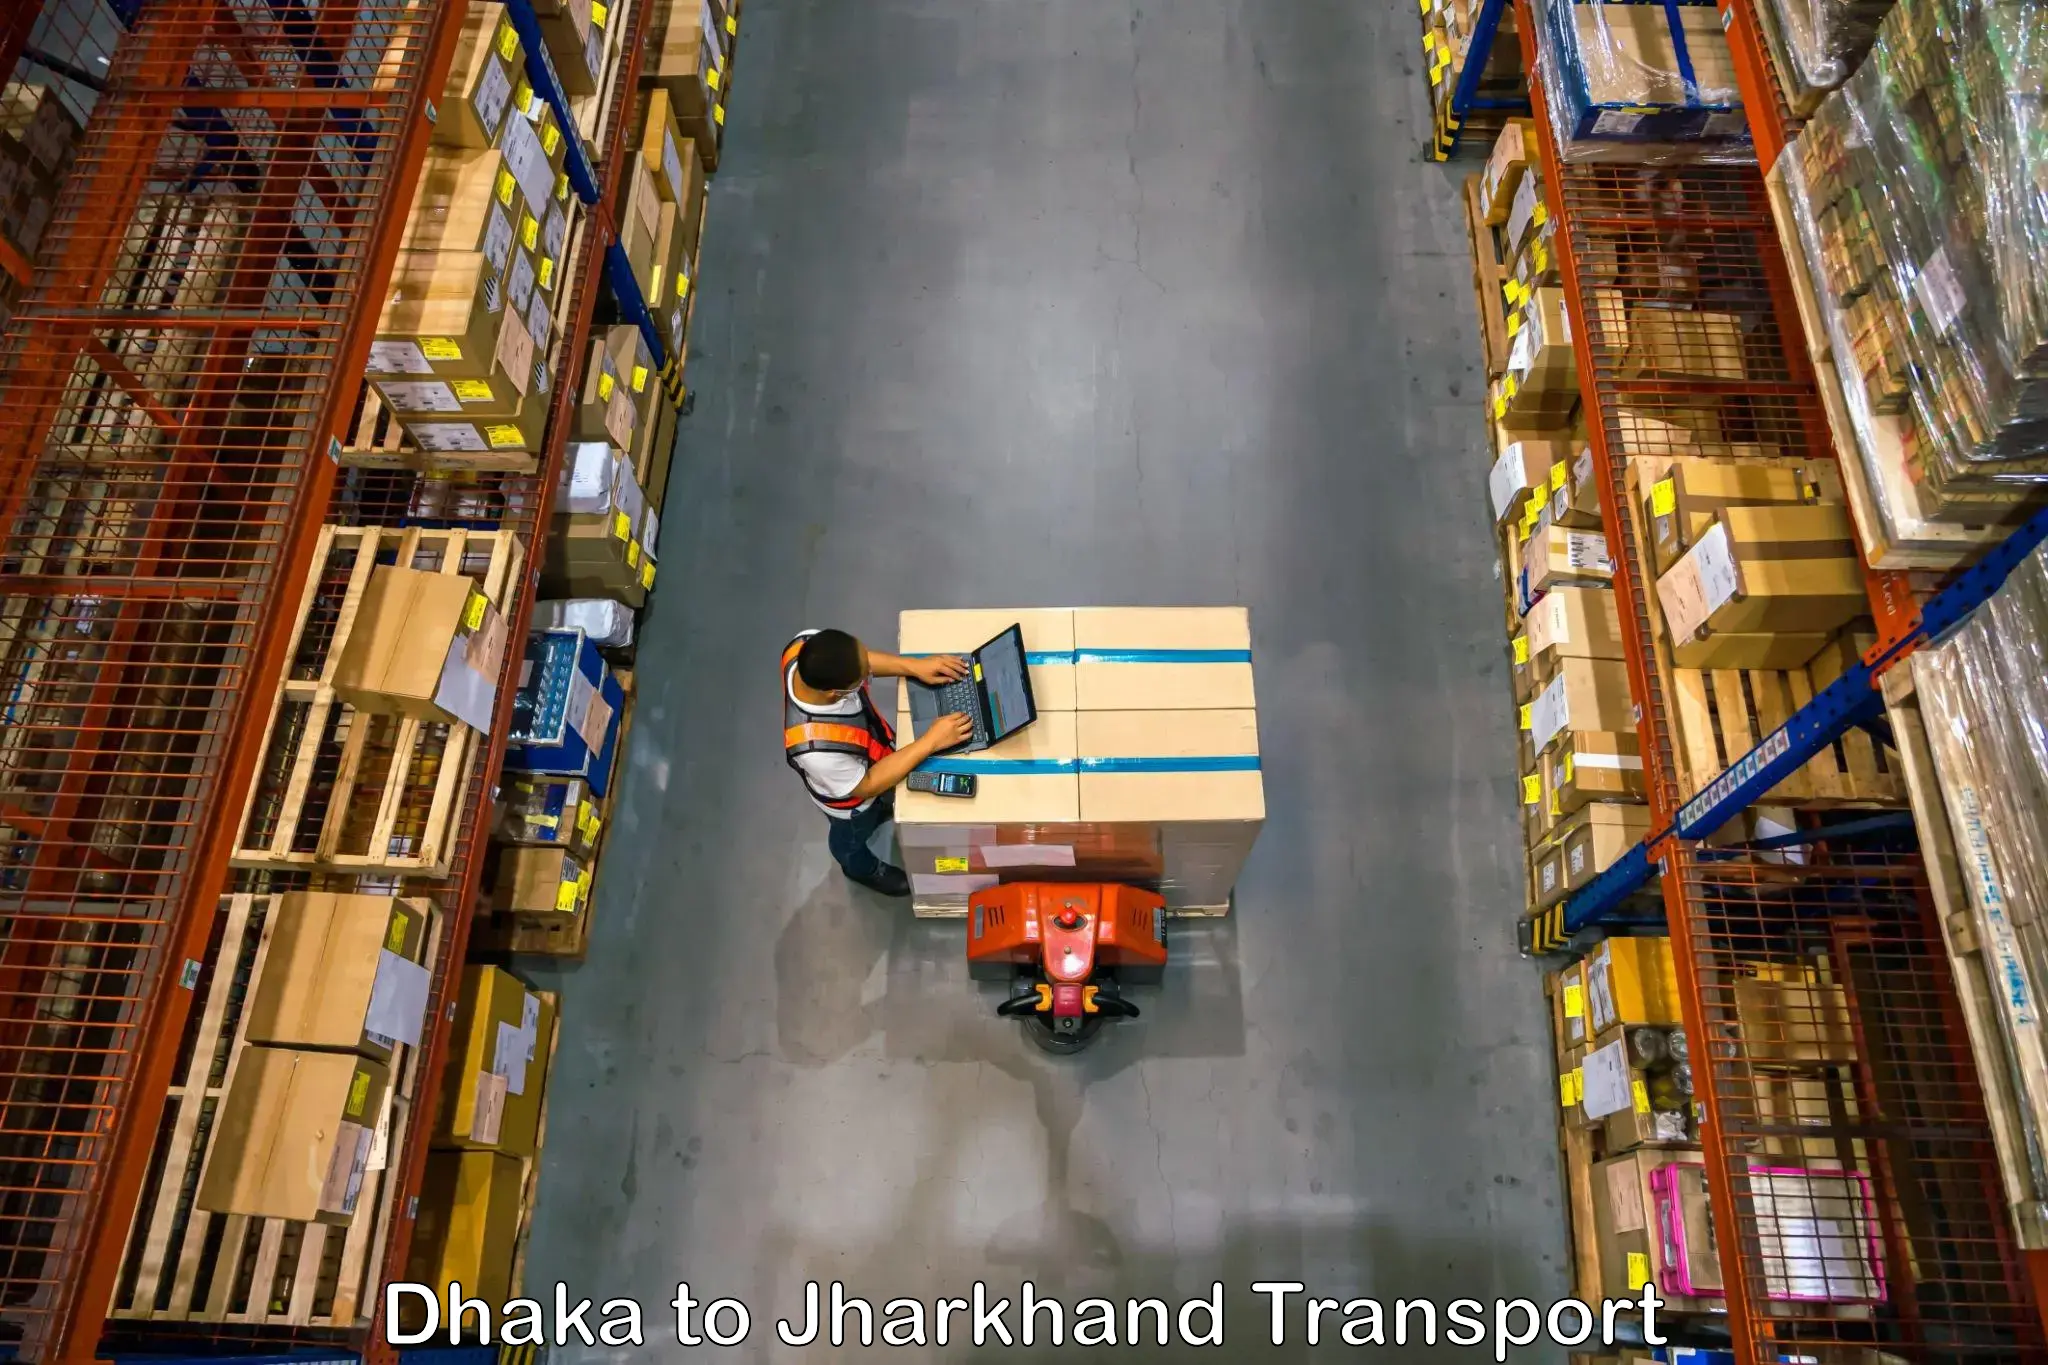 Furniture transport service Dhaka to Chakuliya